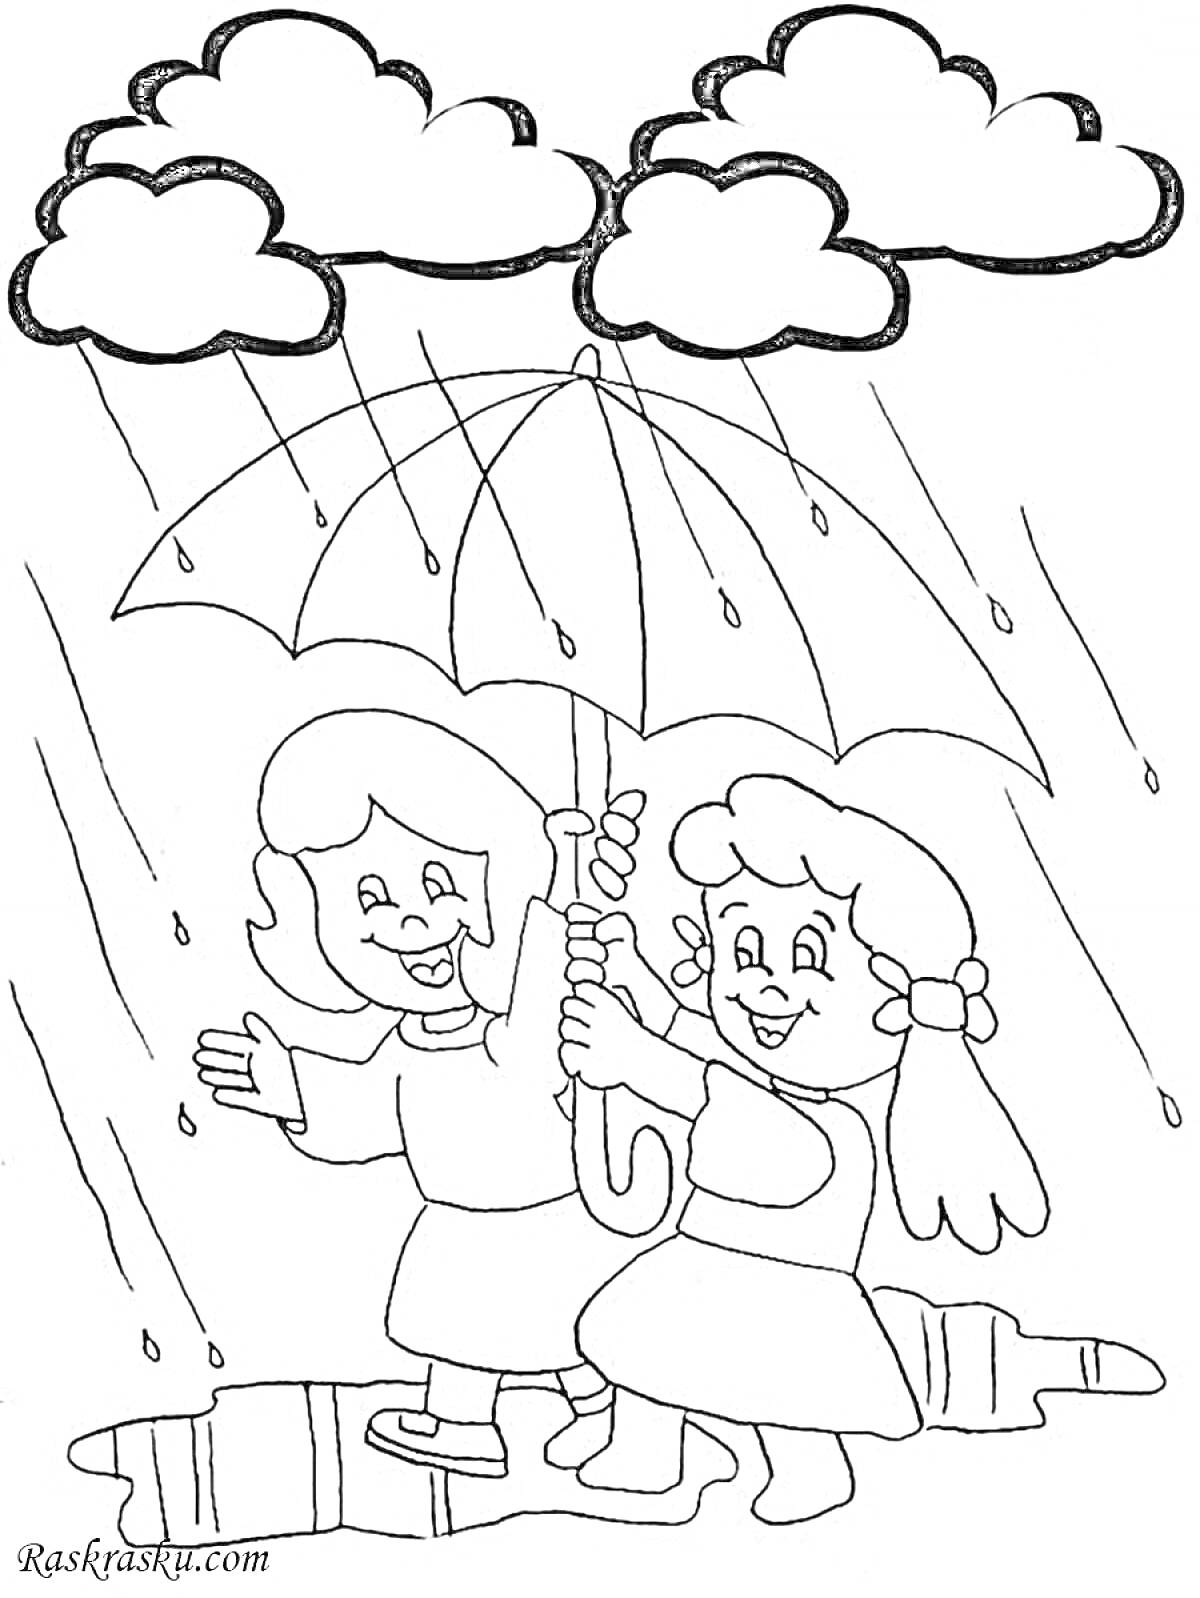 Раскраска Две девочки под зонтом под дождем, лужа, капли дождя, облака.